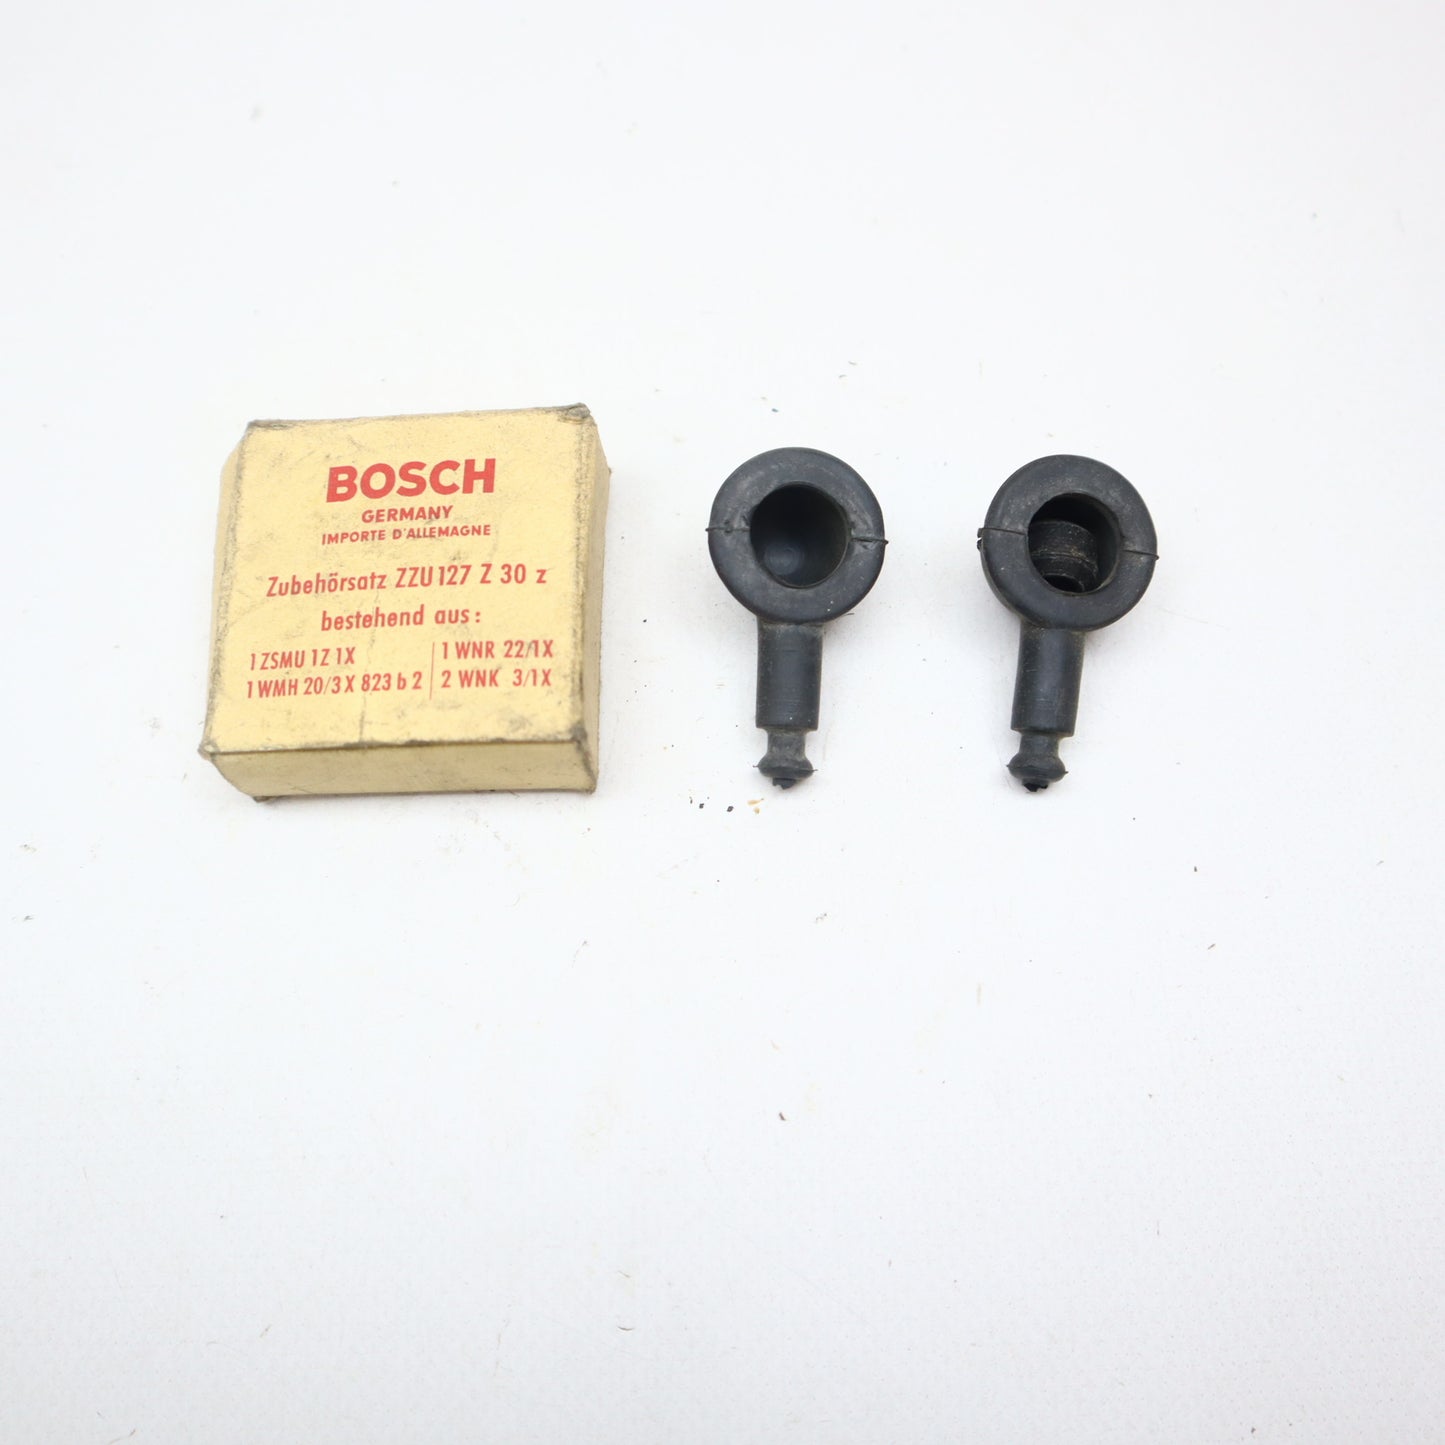 Bosch Zubehörsatz ZZU 127 Z 30 z NOS NEU